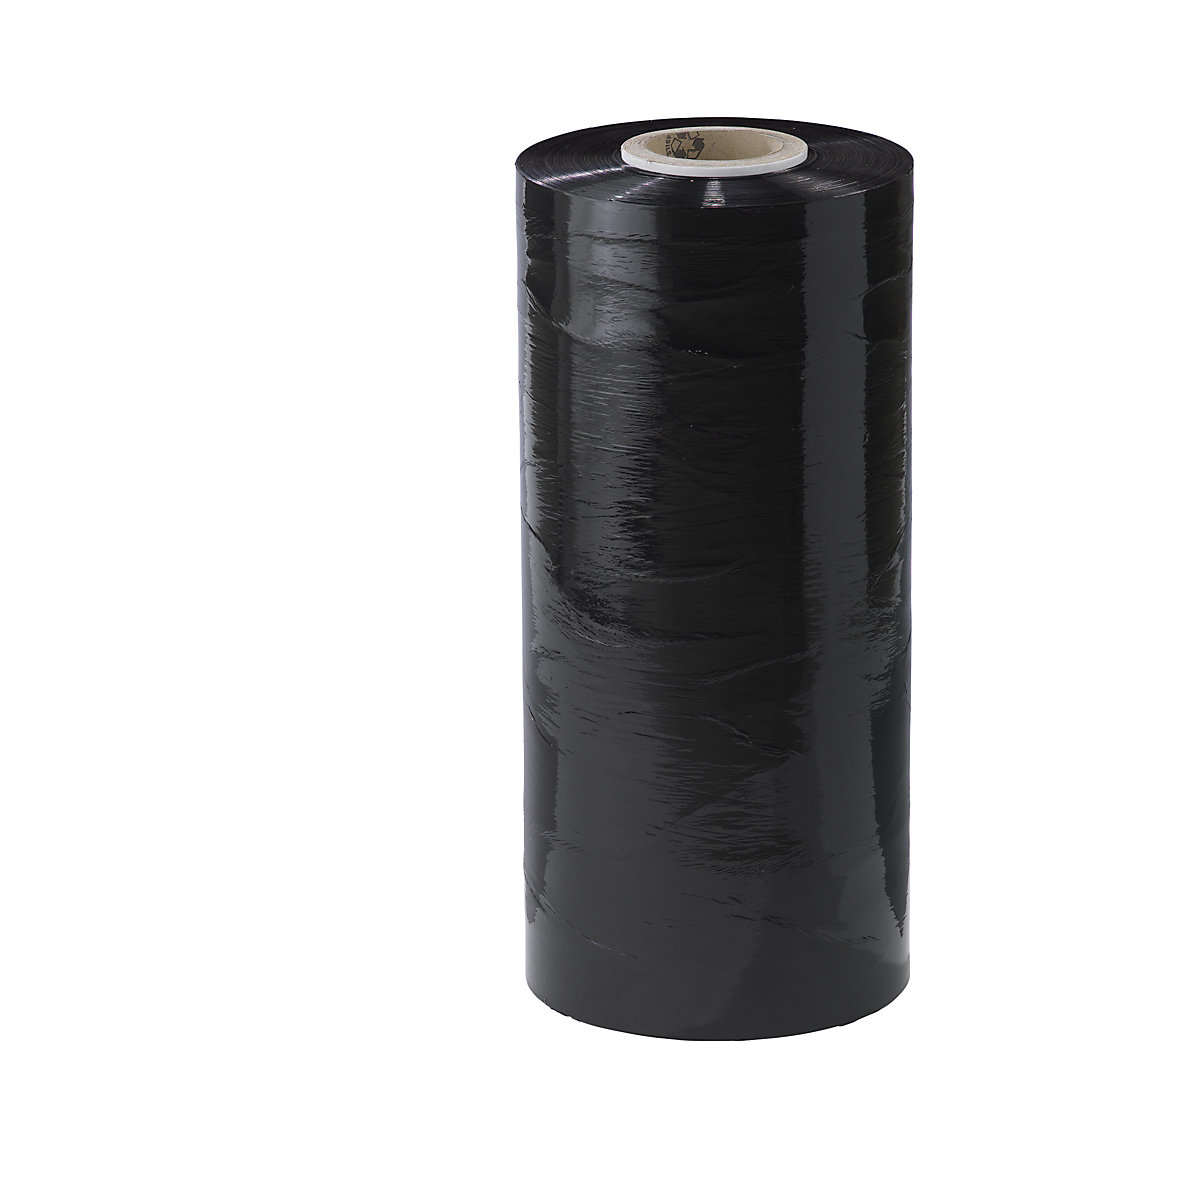 Película estirável para máquinas em PE, largura 500 mm, a partir de 1 embalagem, espessura da película 23 µm, embalagem de 15 unid., preto-1